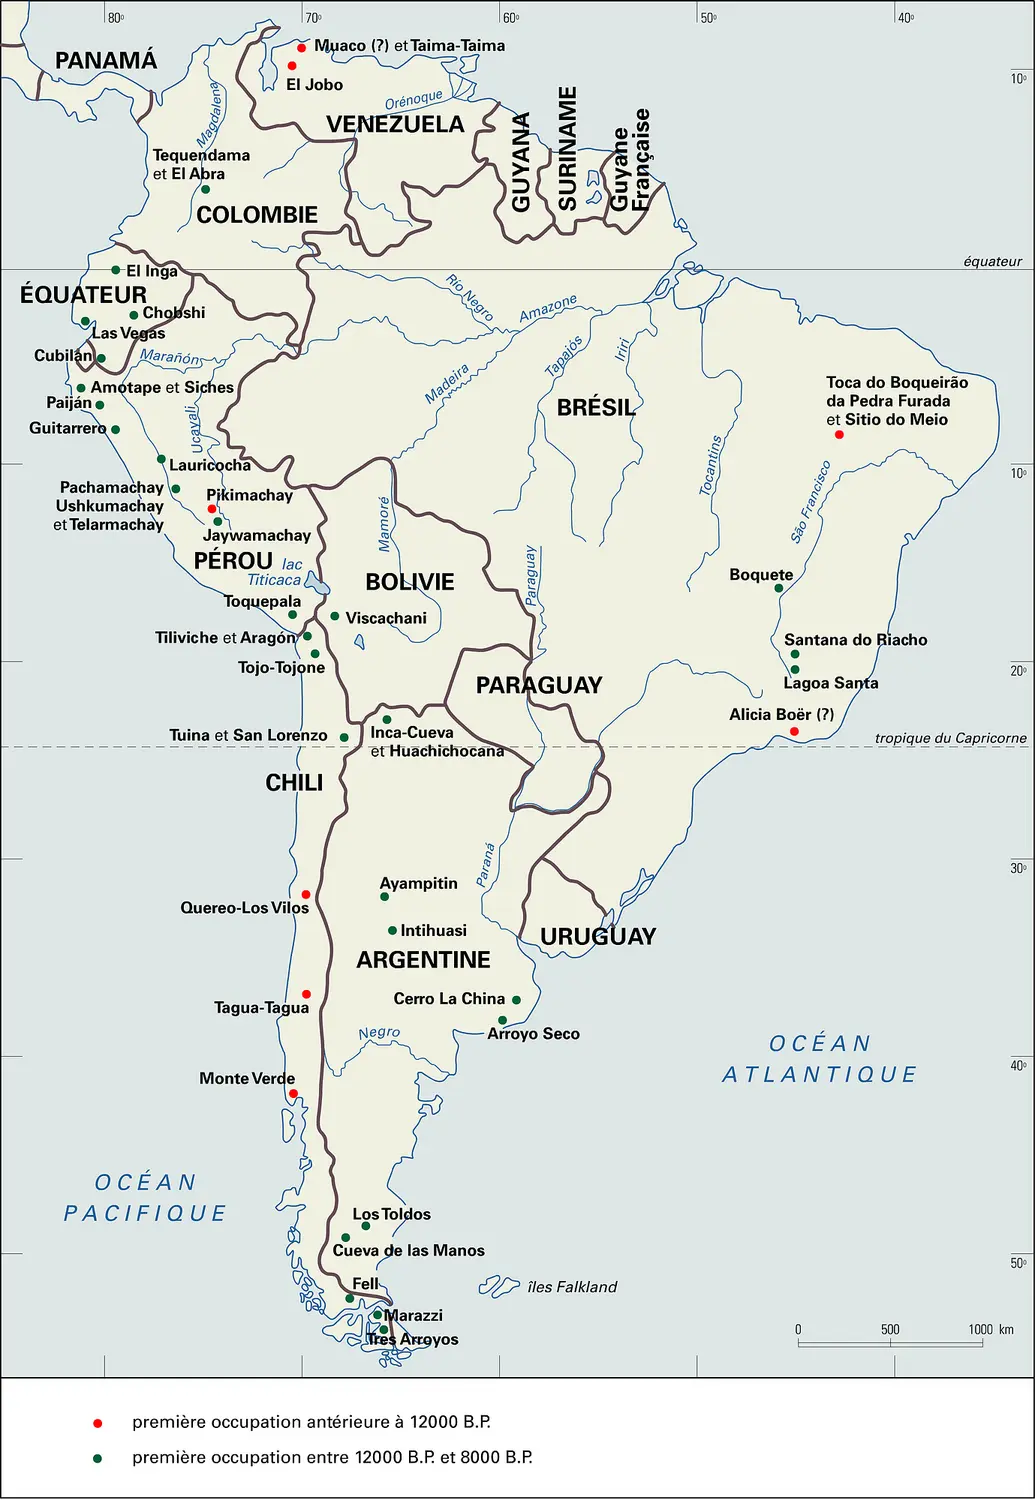 Amérique du Sud : préhistoire jusqu'en 8000 B.P.